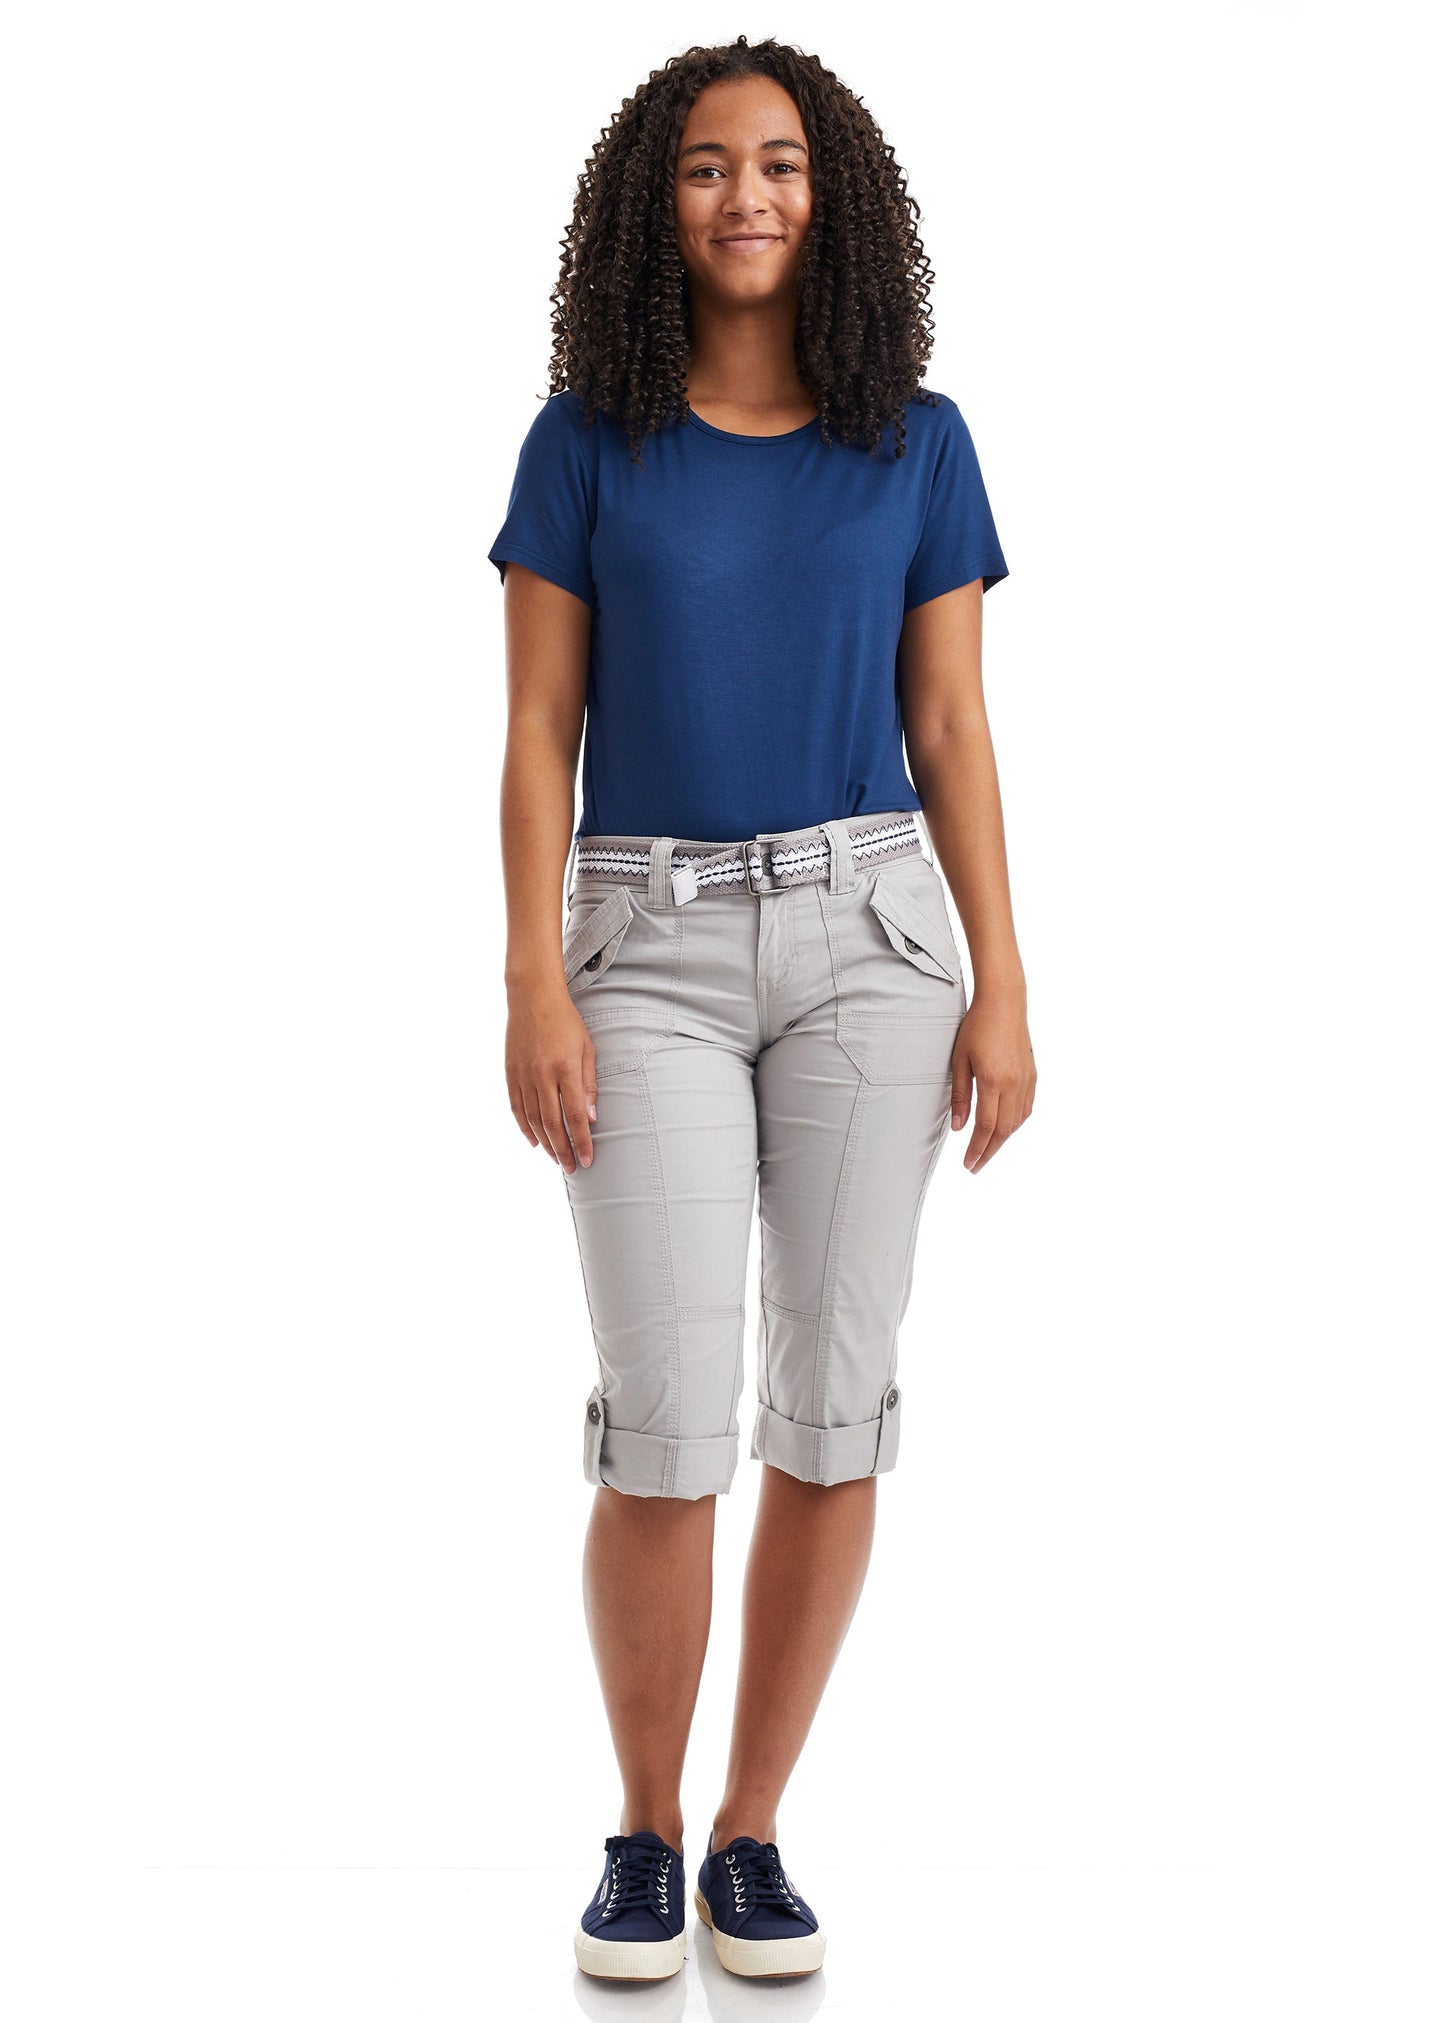 Suko Jeans Women's Cargo Trousers Capri Bermuda Shorts